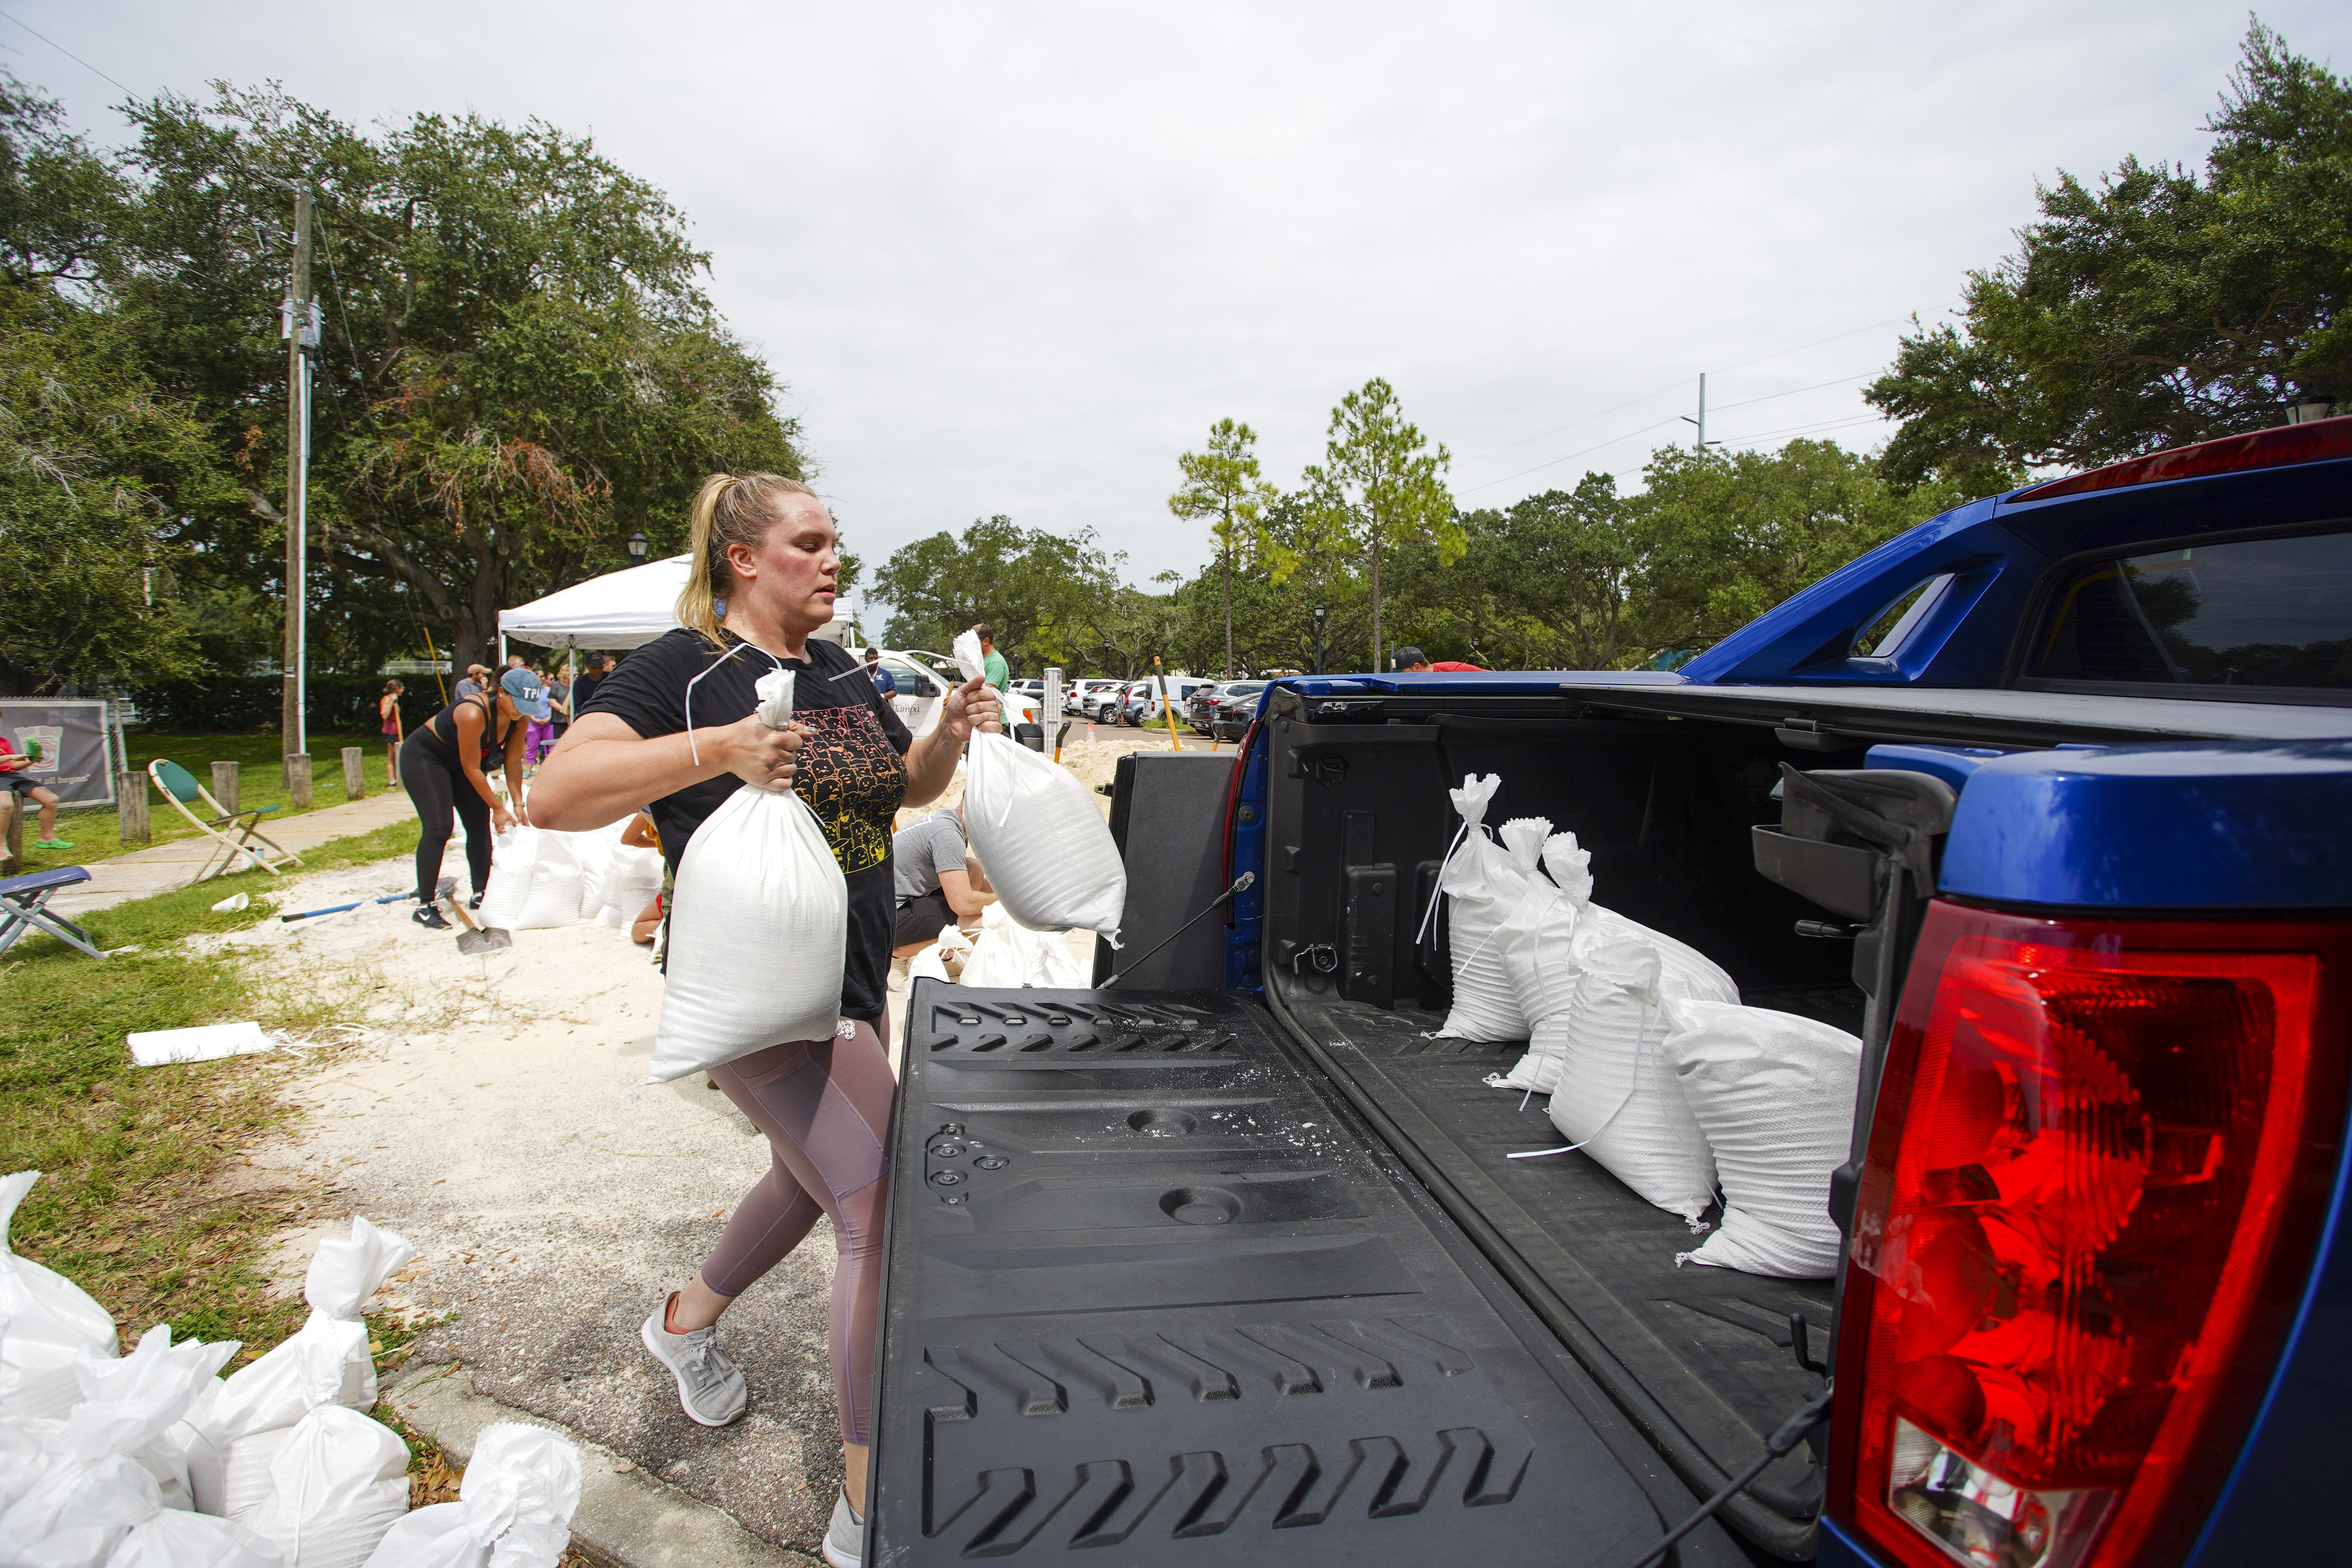 Victoria Colson, 31, of Tampa, loads sandbags into a truck